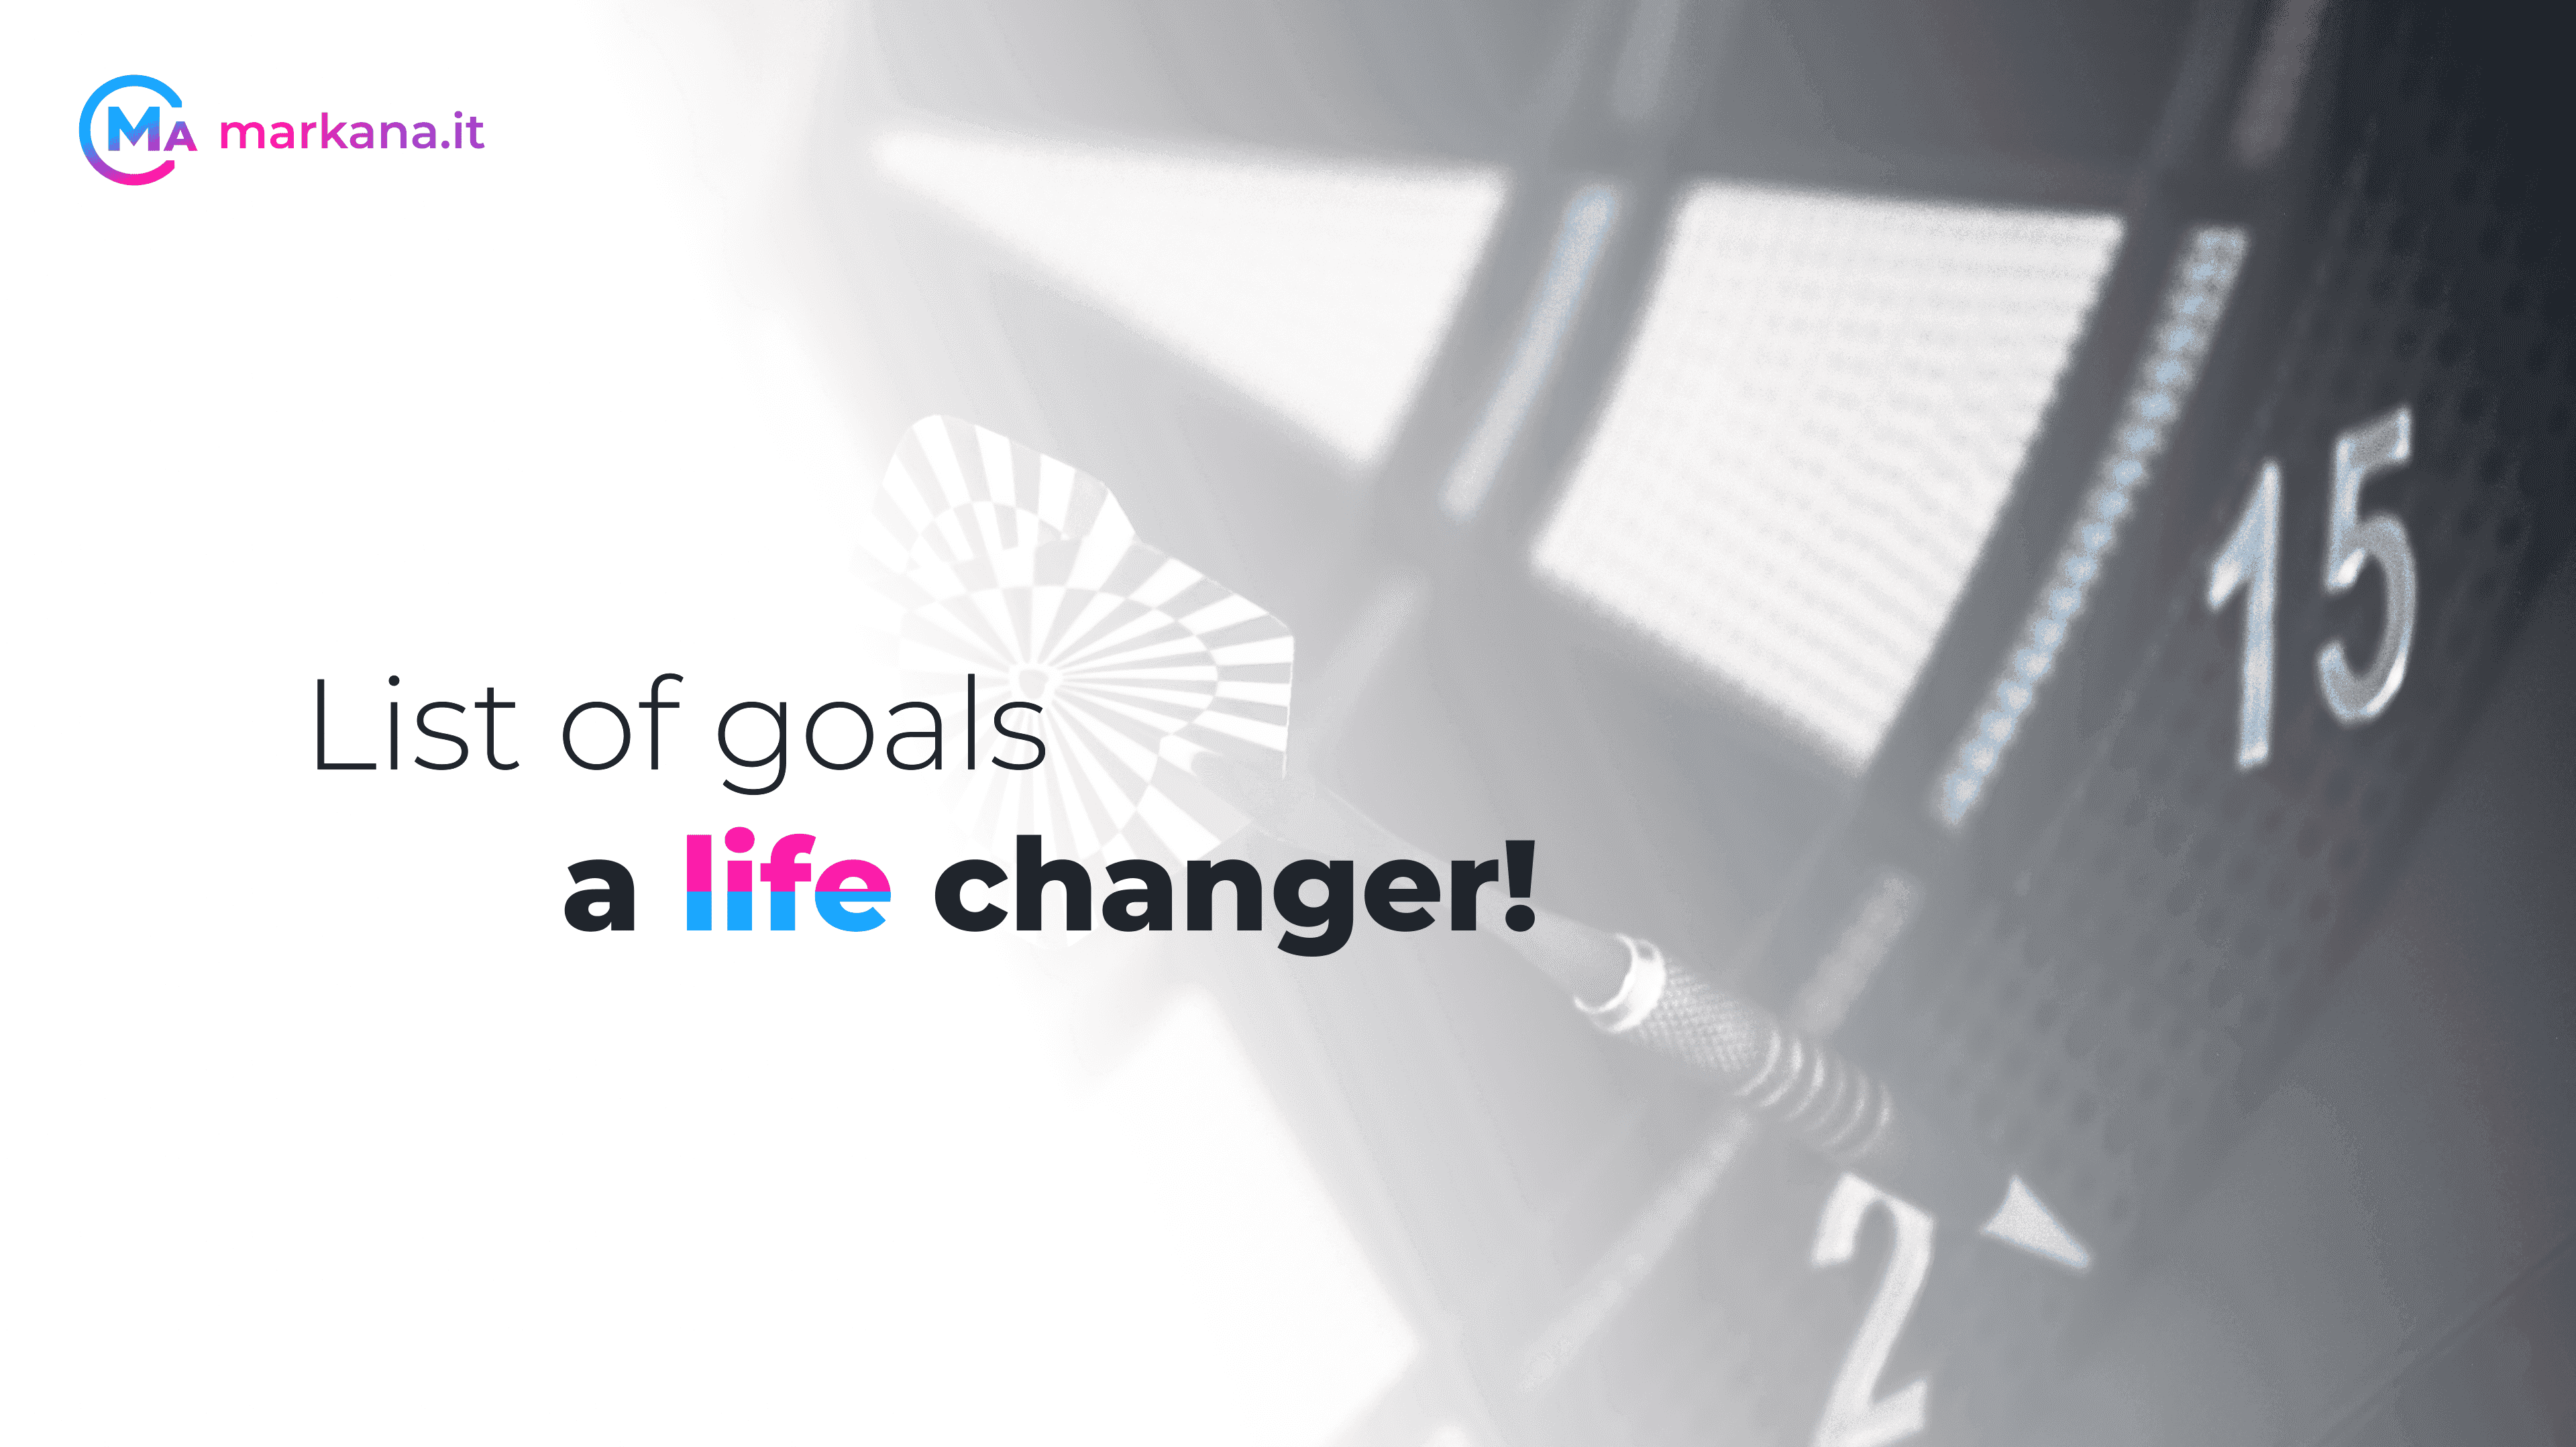 List of goals - a life changer!